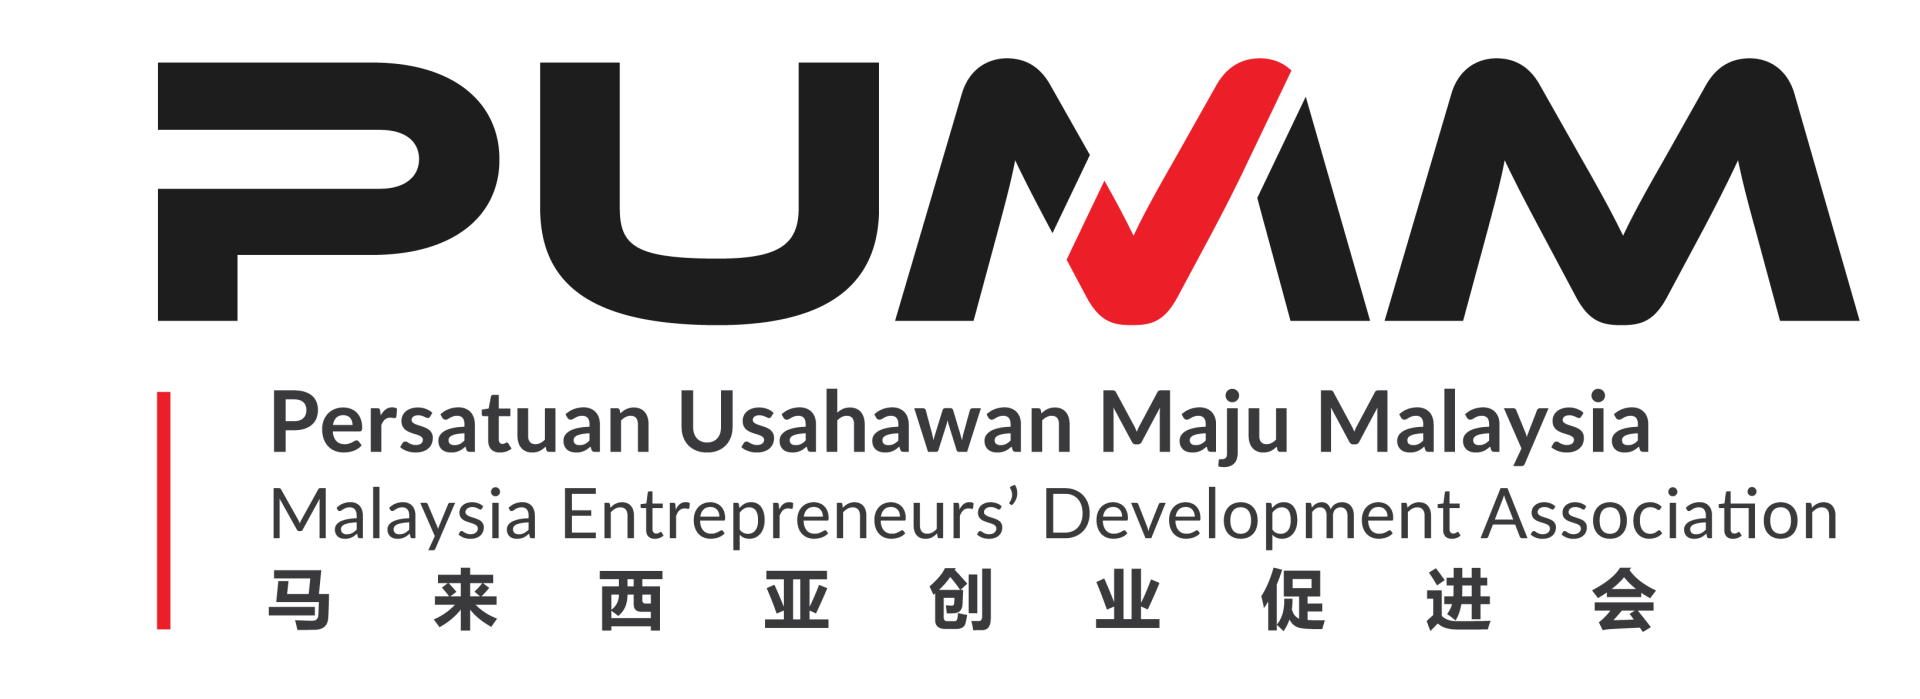 马来西亚创业促进会